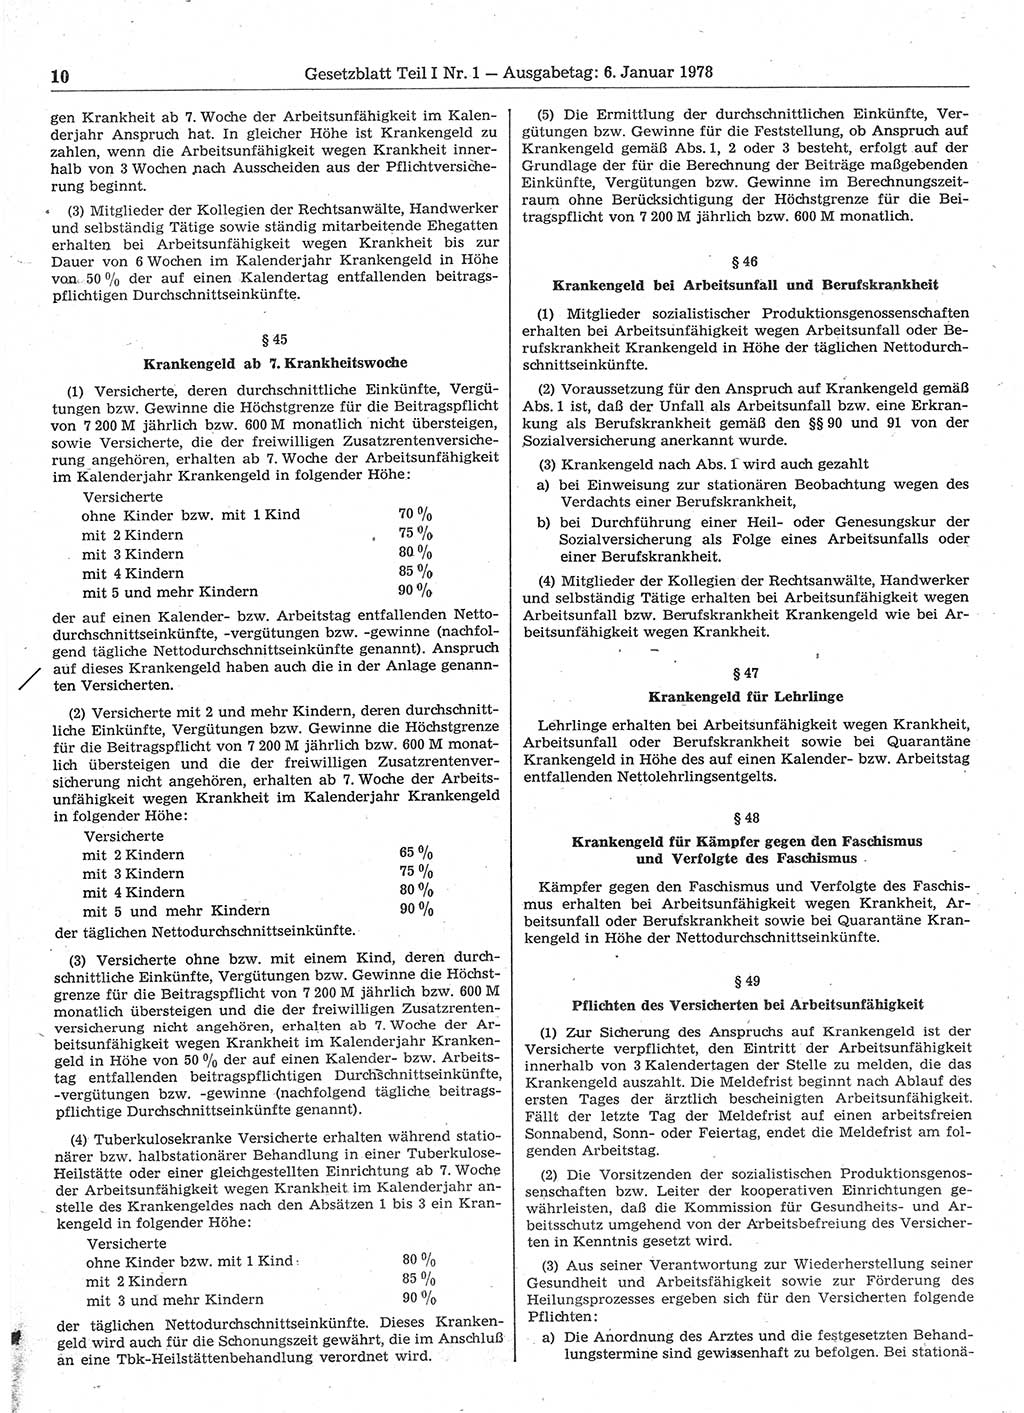 Gesetzblatt (GBl.) der Deutschen Demokratischen Republik (DDR) Teil Ⅰ 1978, Seite 10 (GBl. DDR Ⅰ 1978, S. 10)